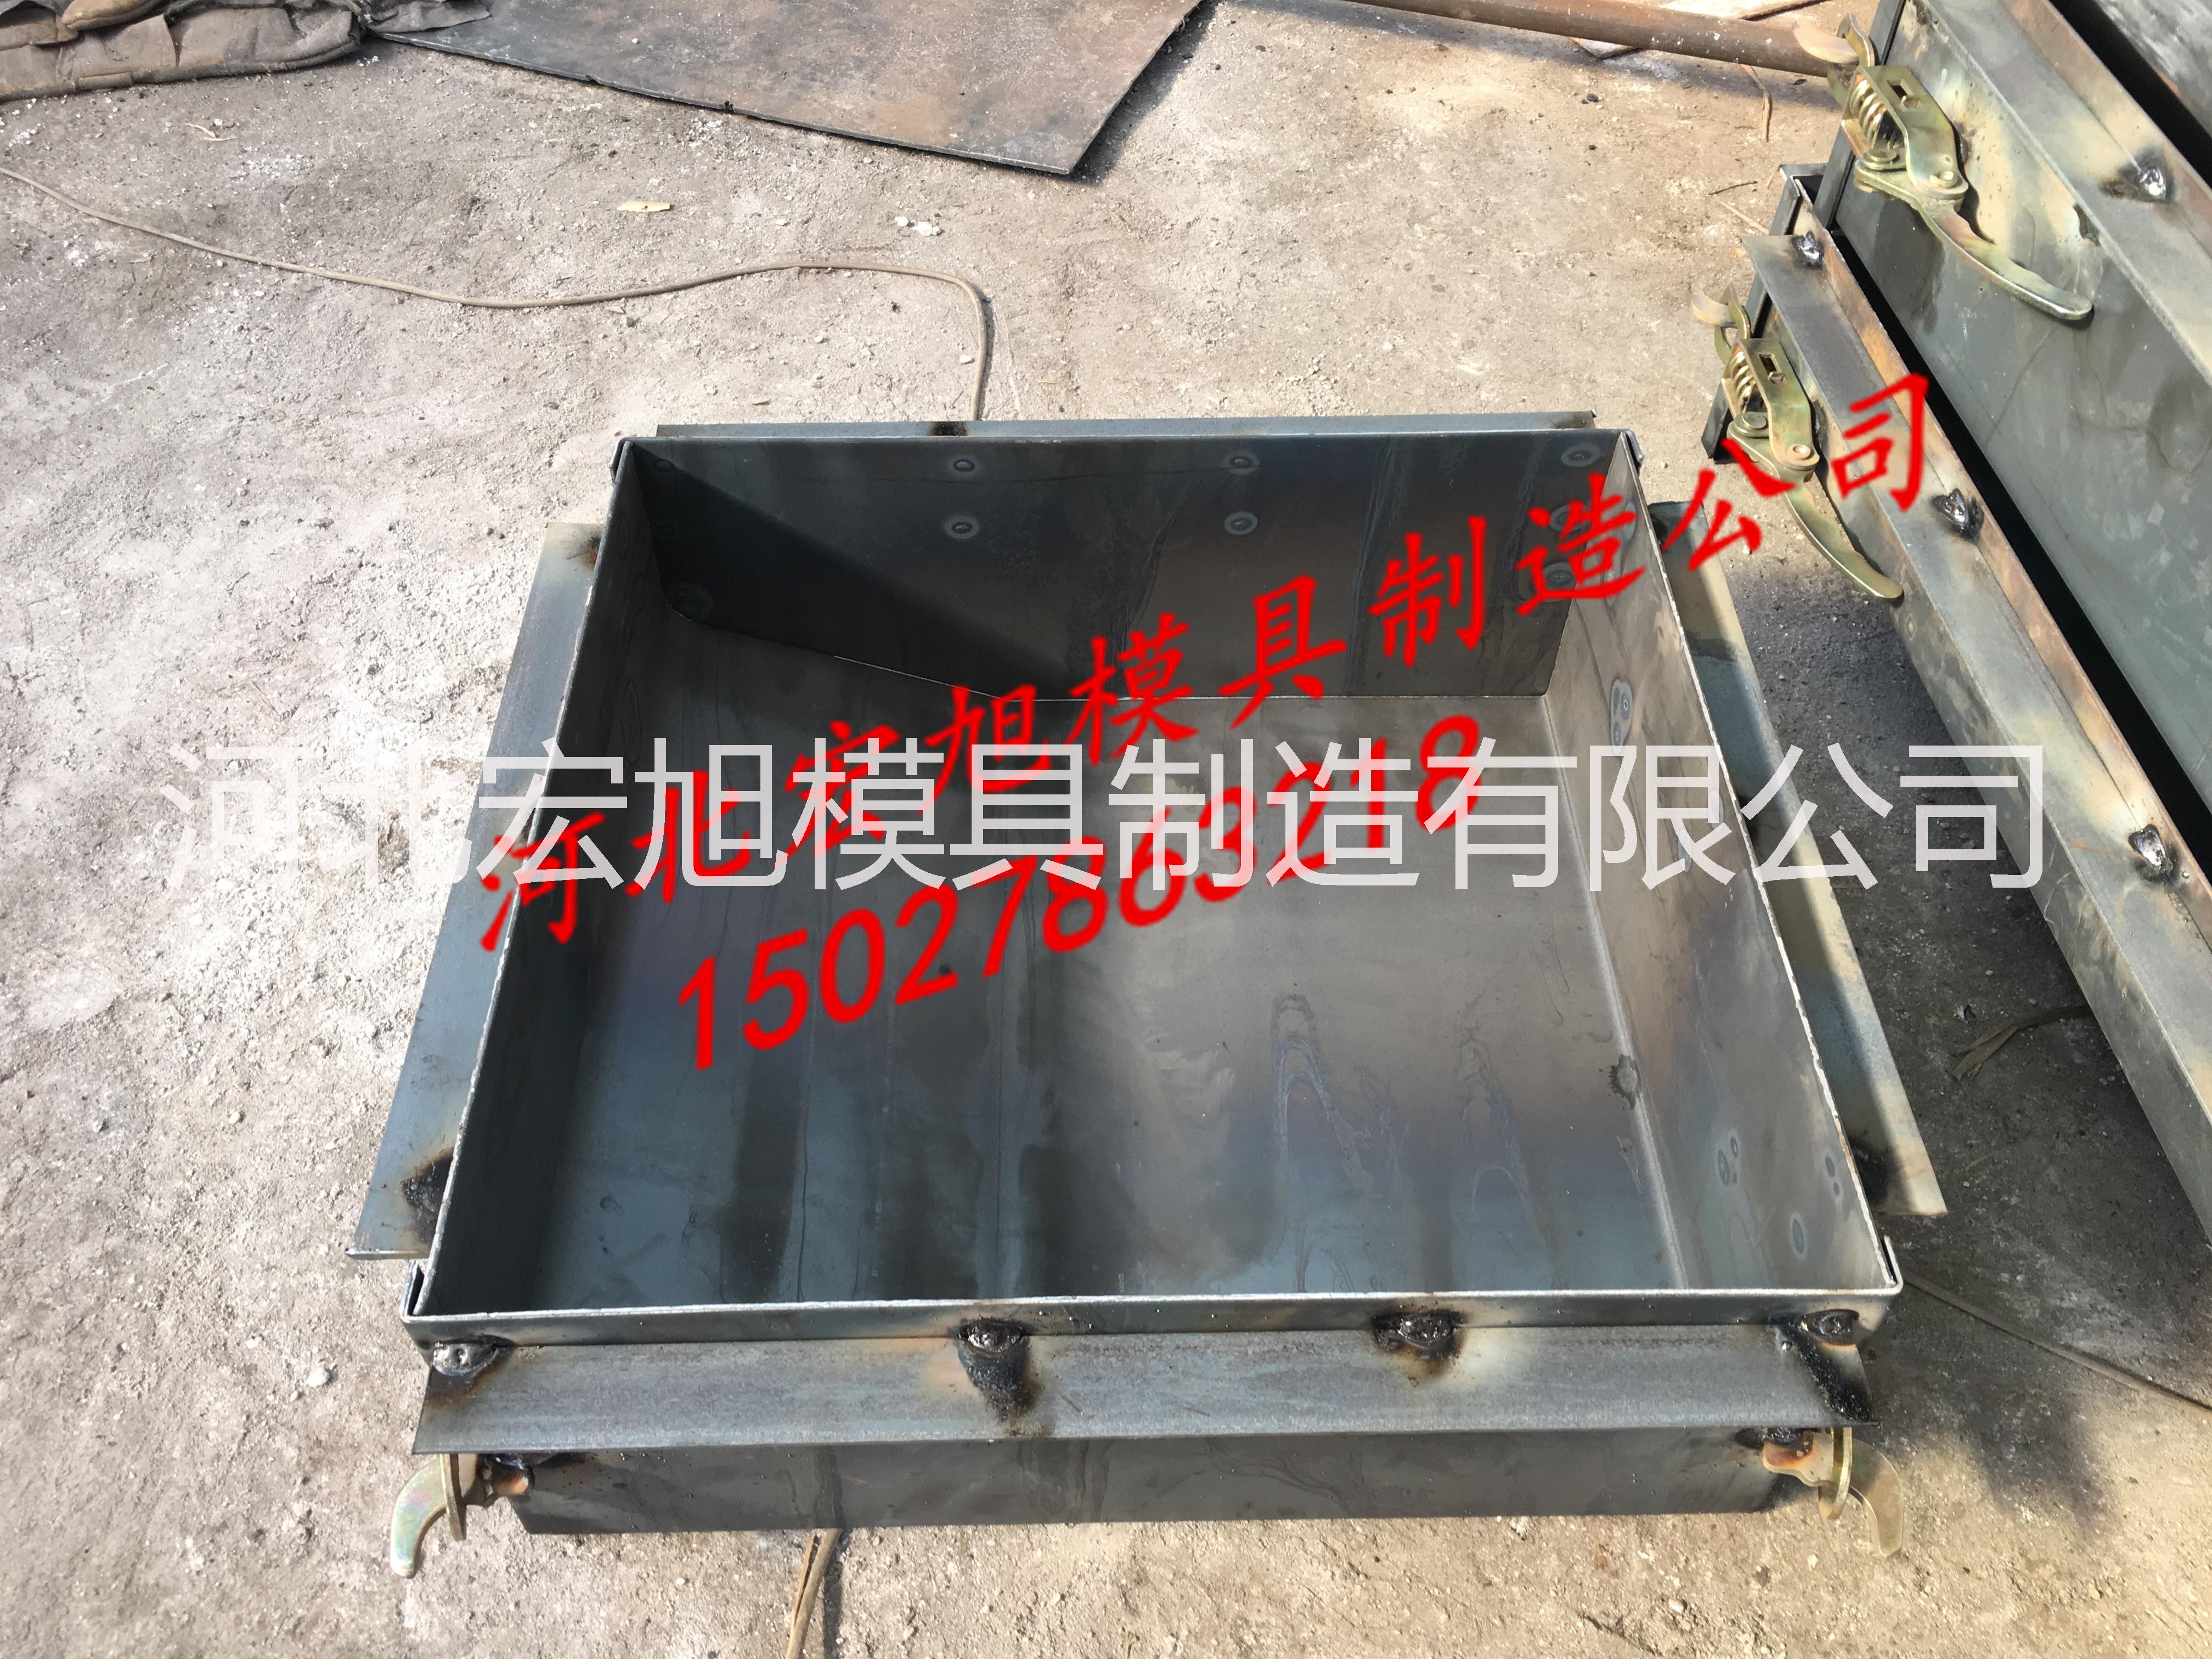 安庆市电缆槽盖板模具厂家 安庆市高速公路盖板模具批发 安庆市下水道盖板模具质量